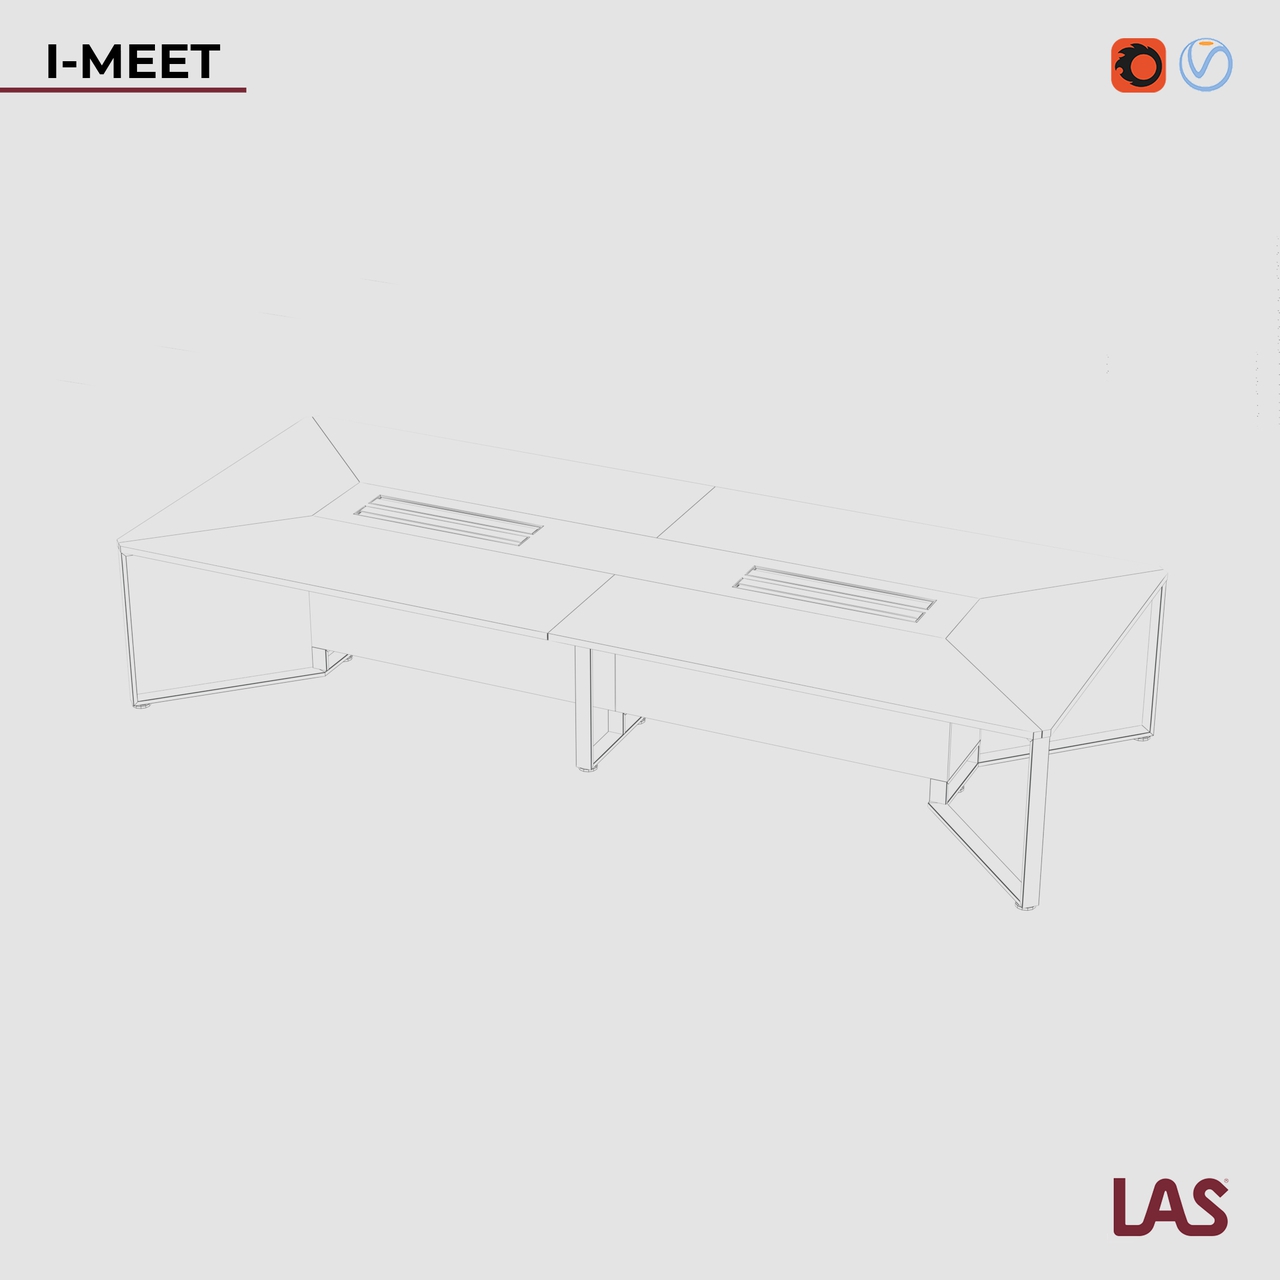 Превью G 3D-модели прямоугольного переговорного стола на 14 человек LAS I-Meet 146650